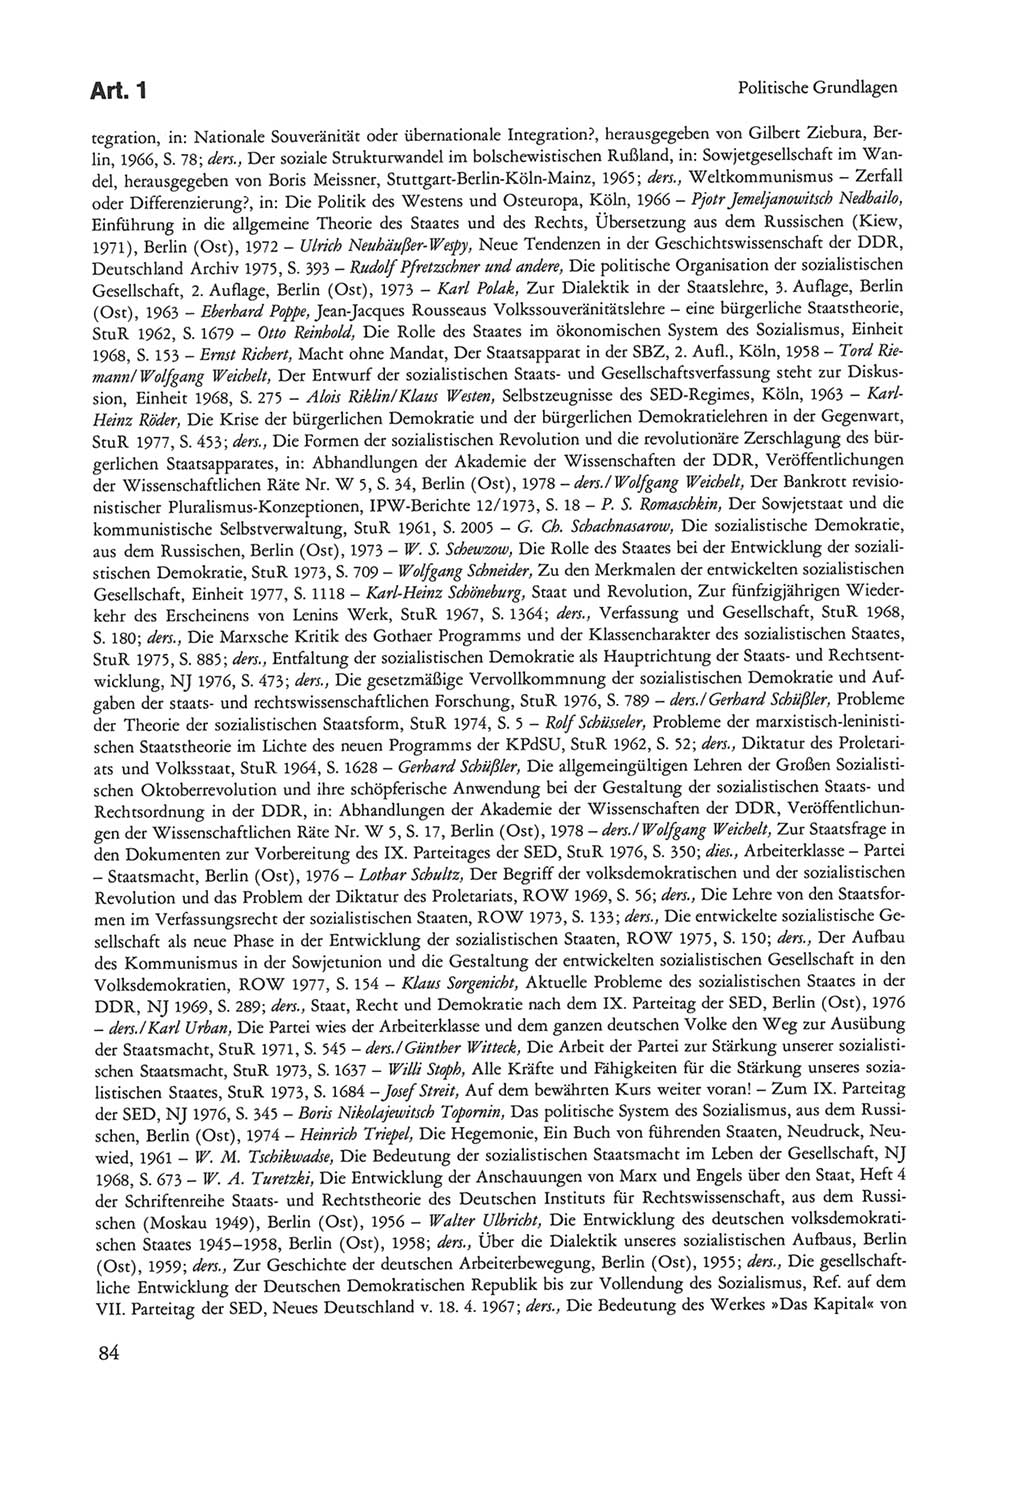 Die sozialistische Verfassung der Deutschen Demokratischen Republik (DDR), Kommentar mit einem Nachtrag 1997, Seite 84 (Soz. Verf. DDR Komm. Nachtr. 1997, S. 84)